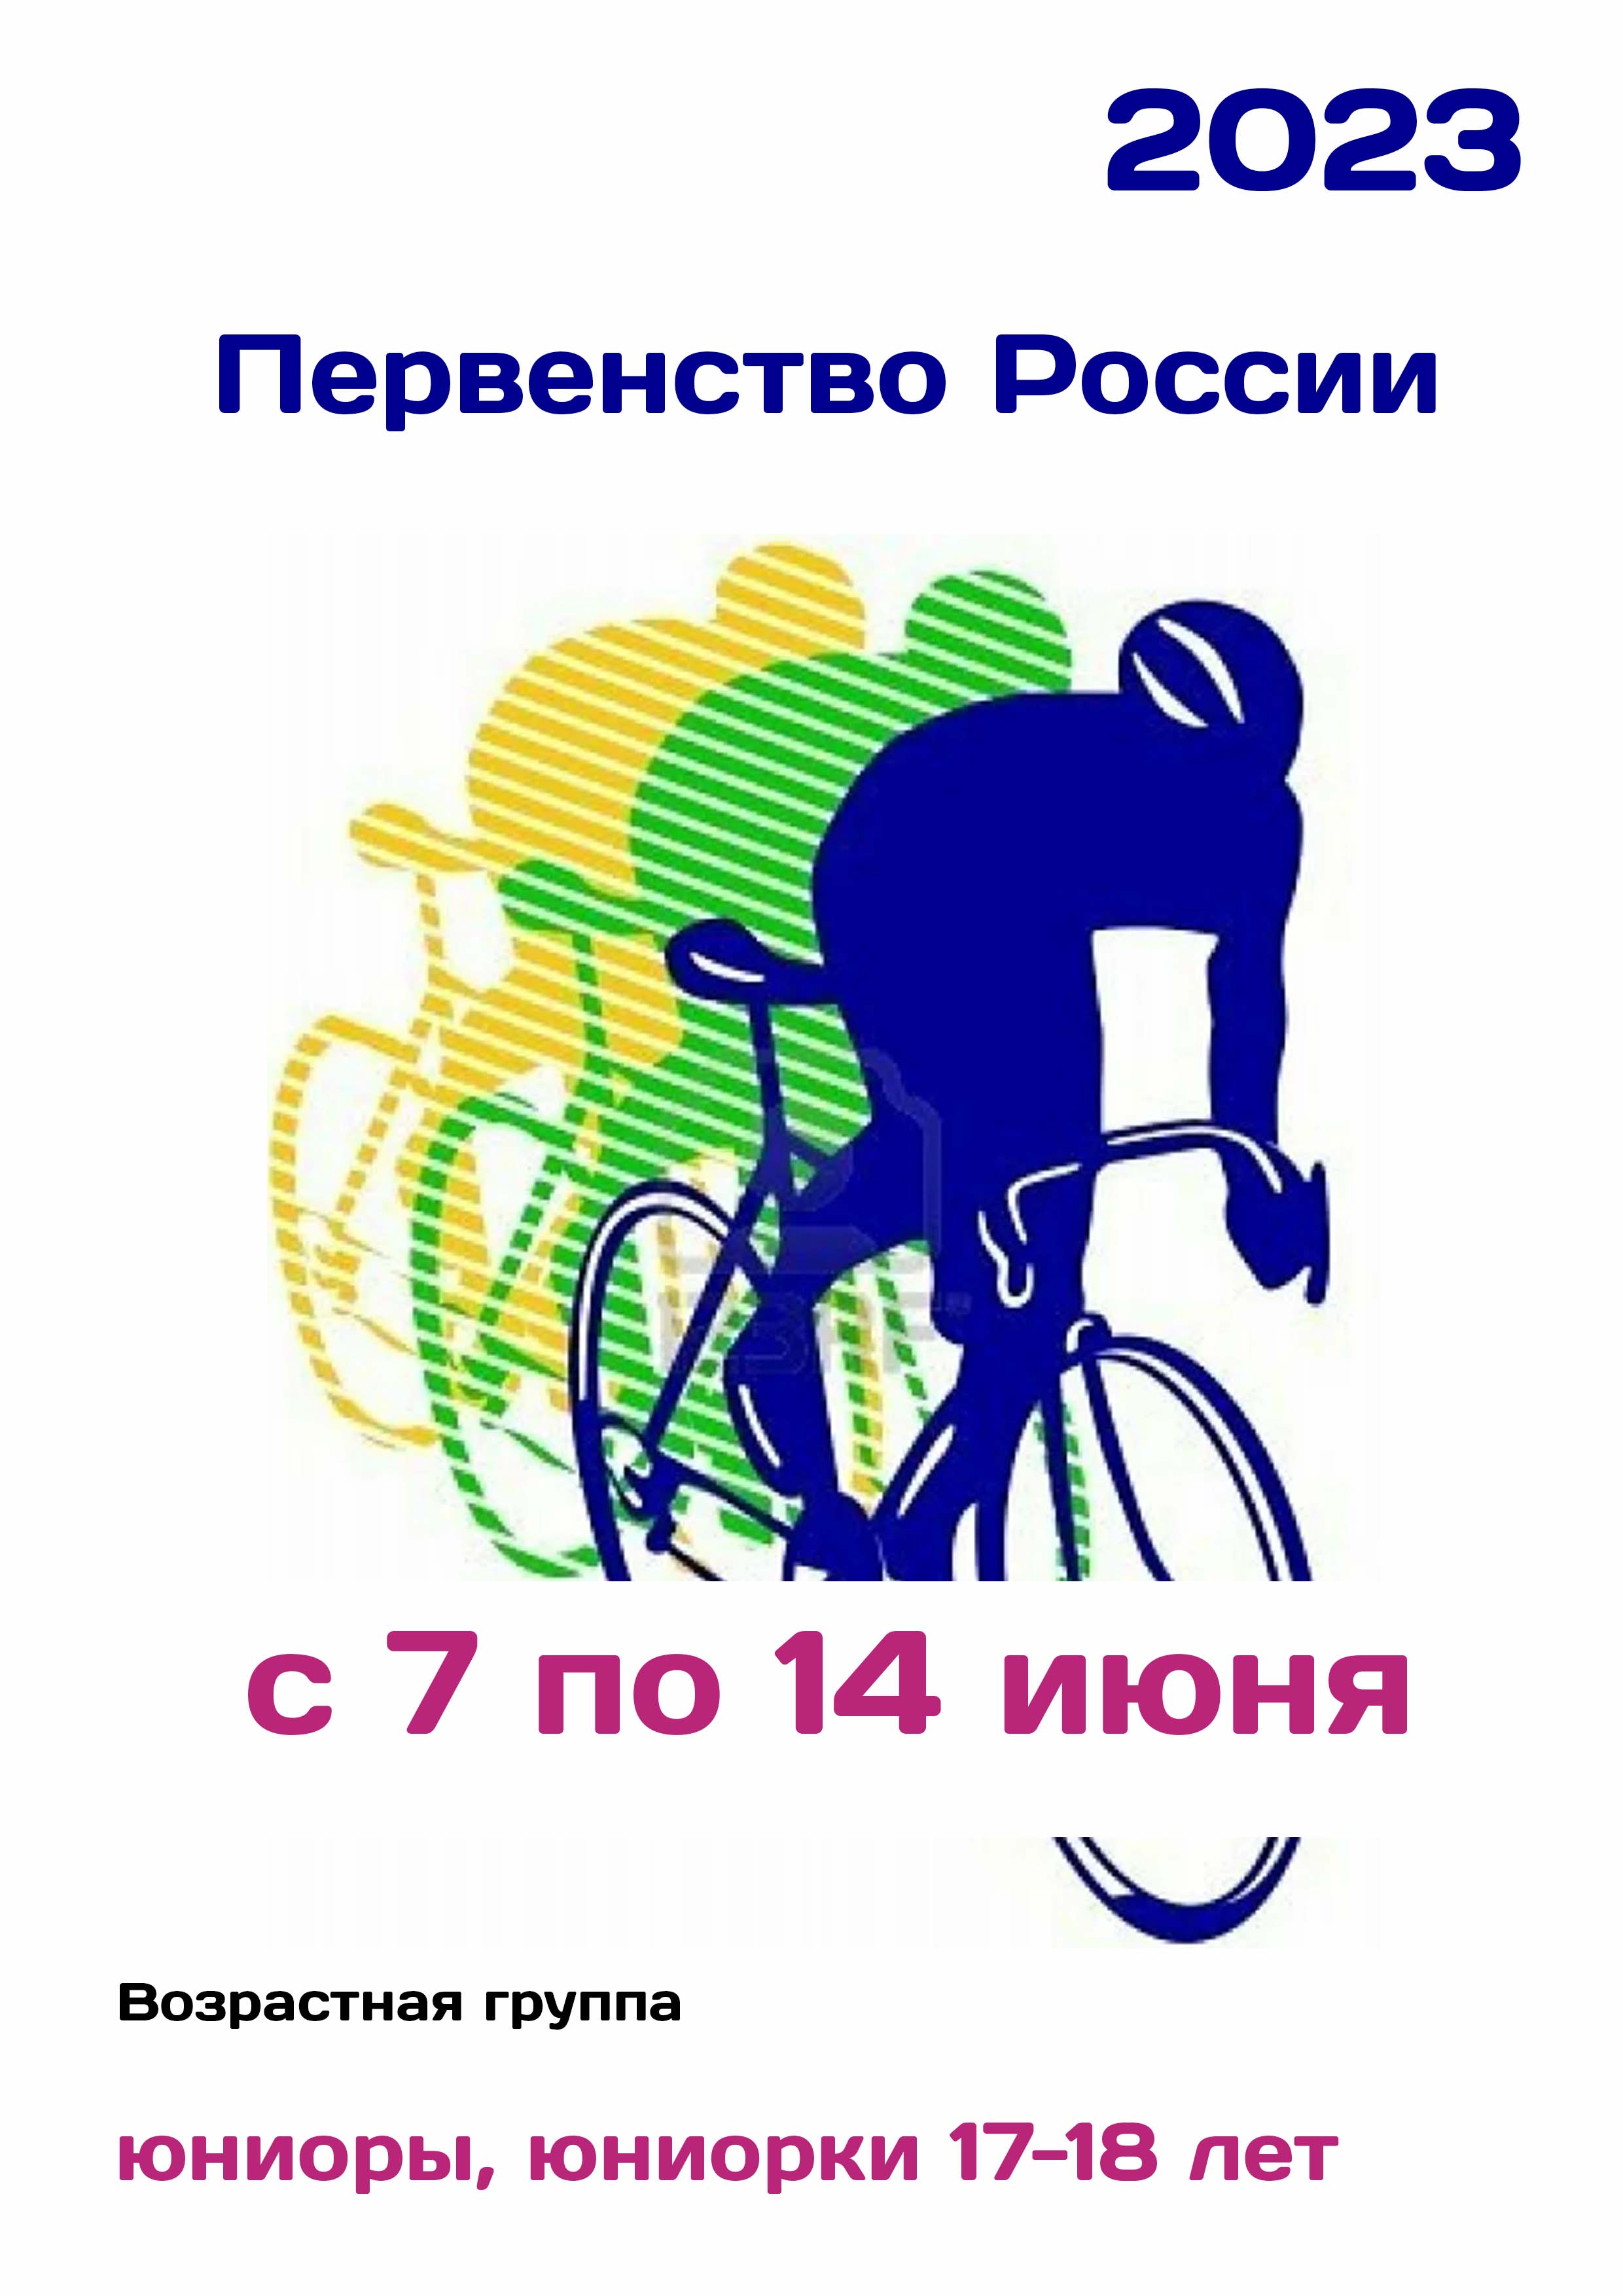 Первенство России по велоспорту 7  iunie
 2023  an
 